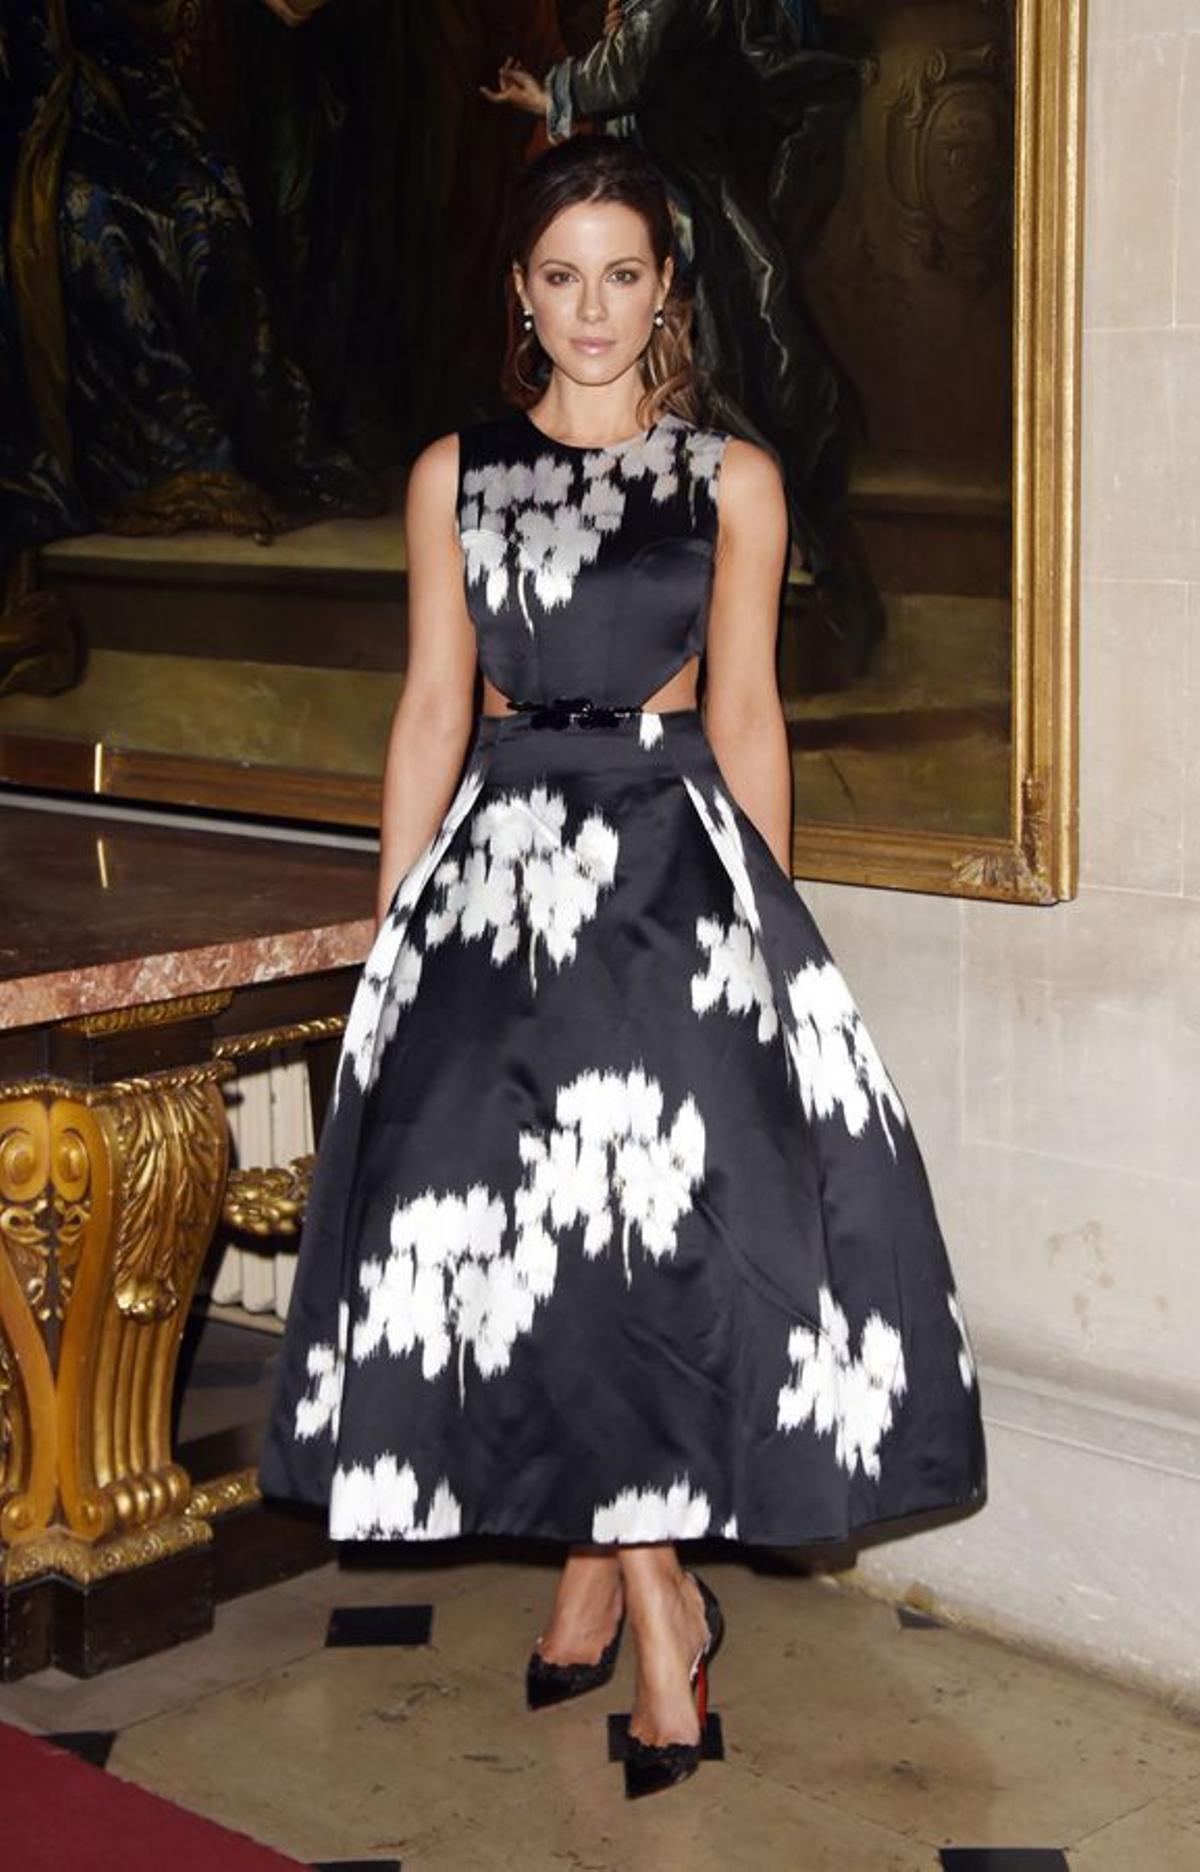 Las más elegantes de la semana 22, 7- Kate Beckinsale